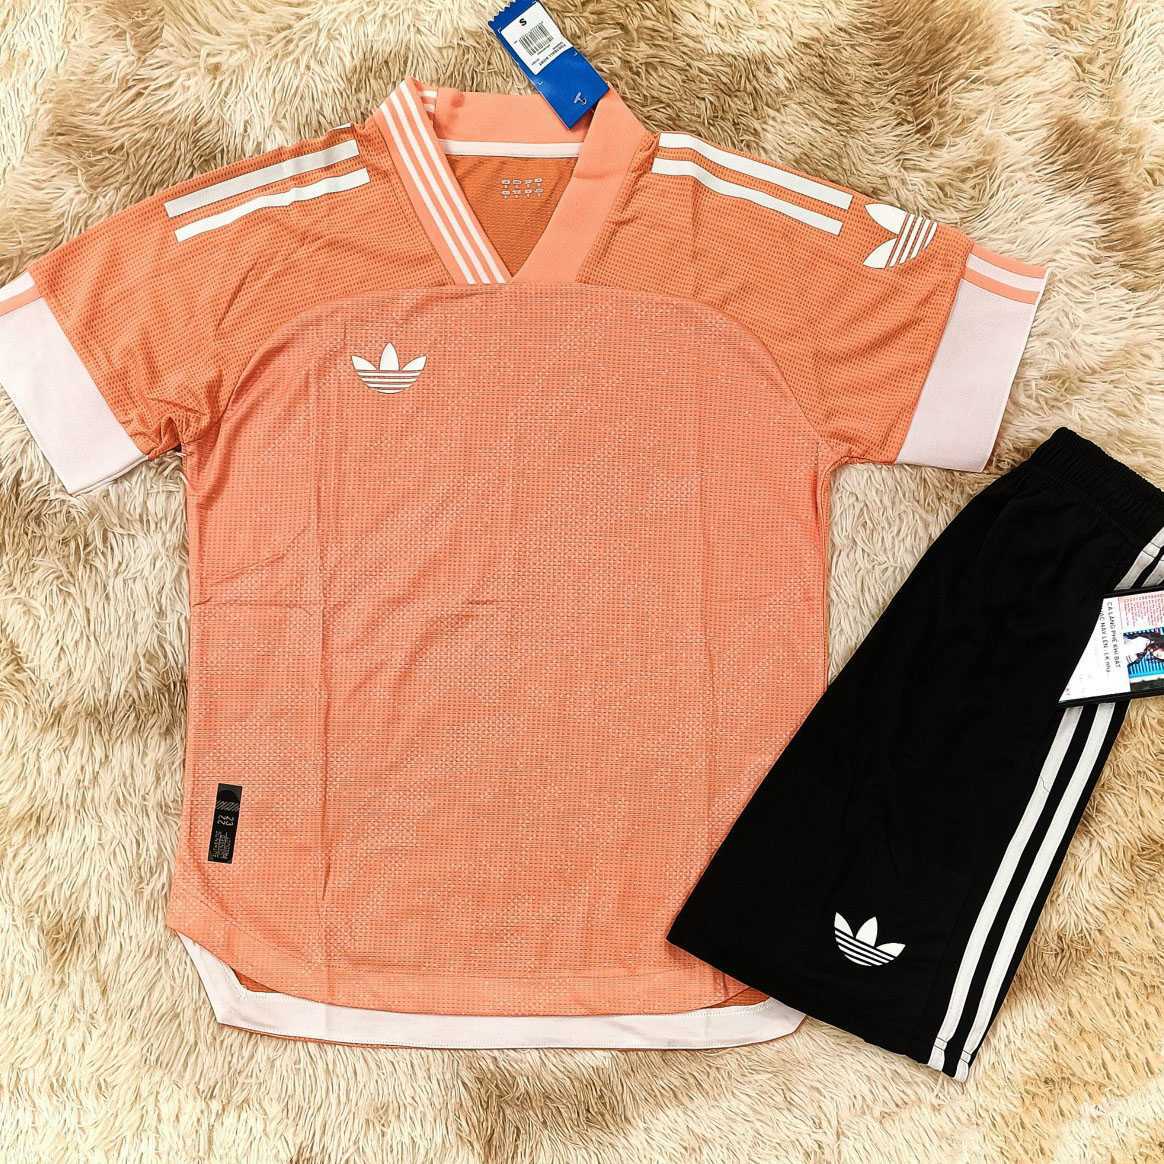 Bộ quần áo thể thao thời trang không logo adidas 3 ba lá nhiều màu cam